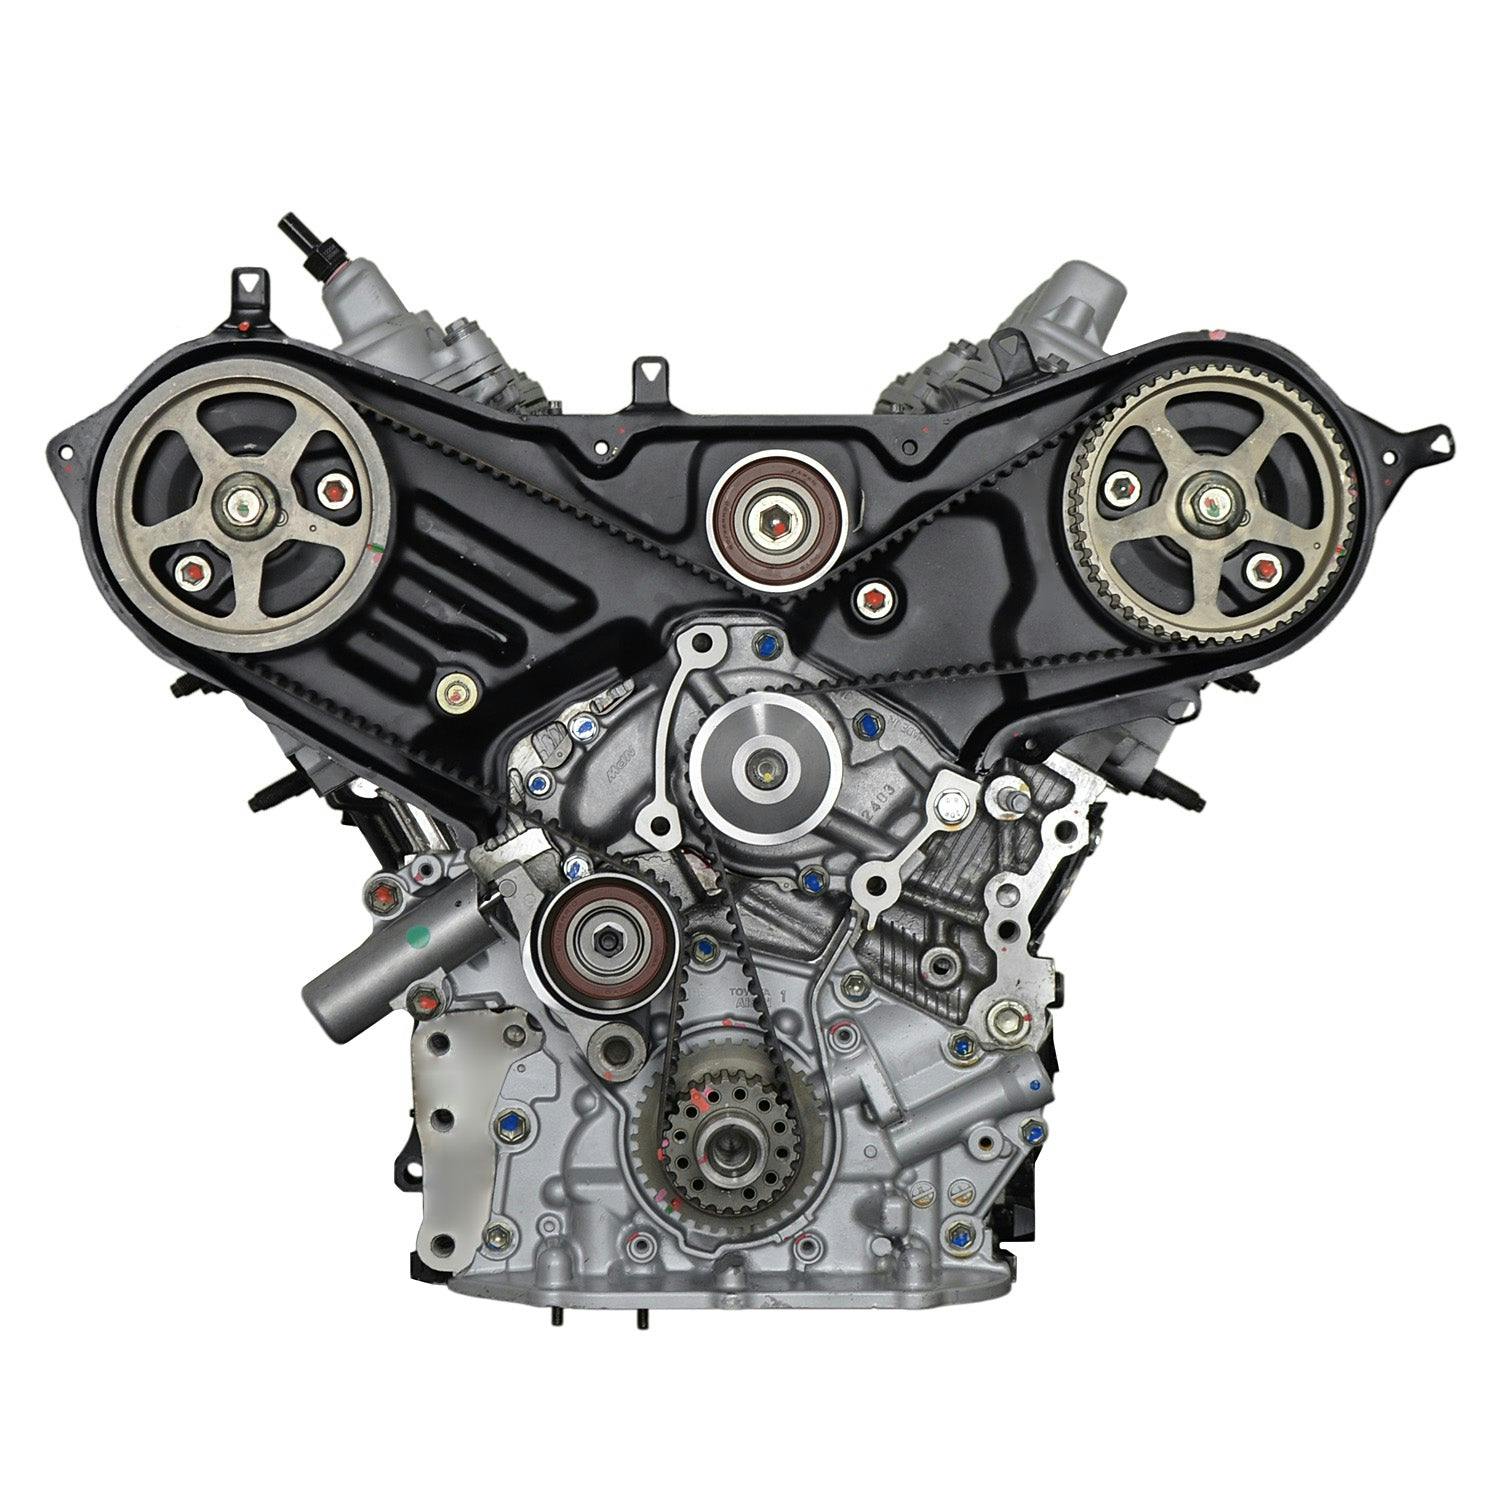 3.3L V6 Engine for 2006-2010 Lexus RX400h/Toyota Highlander